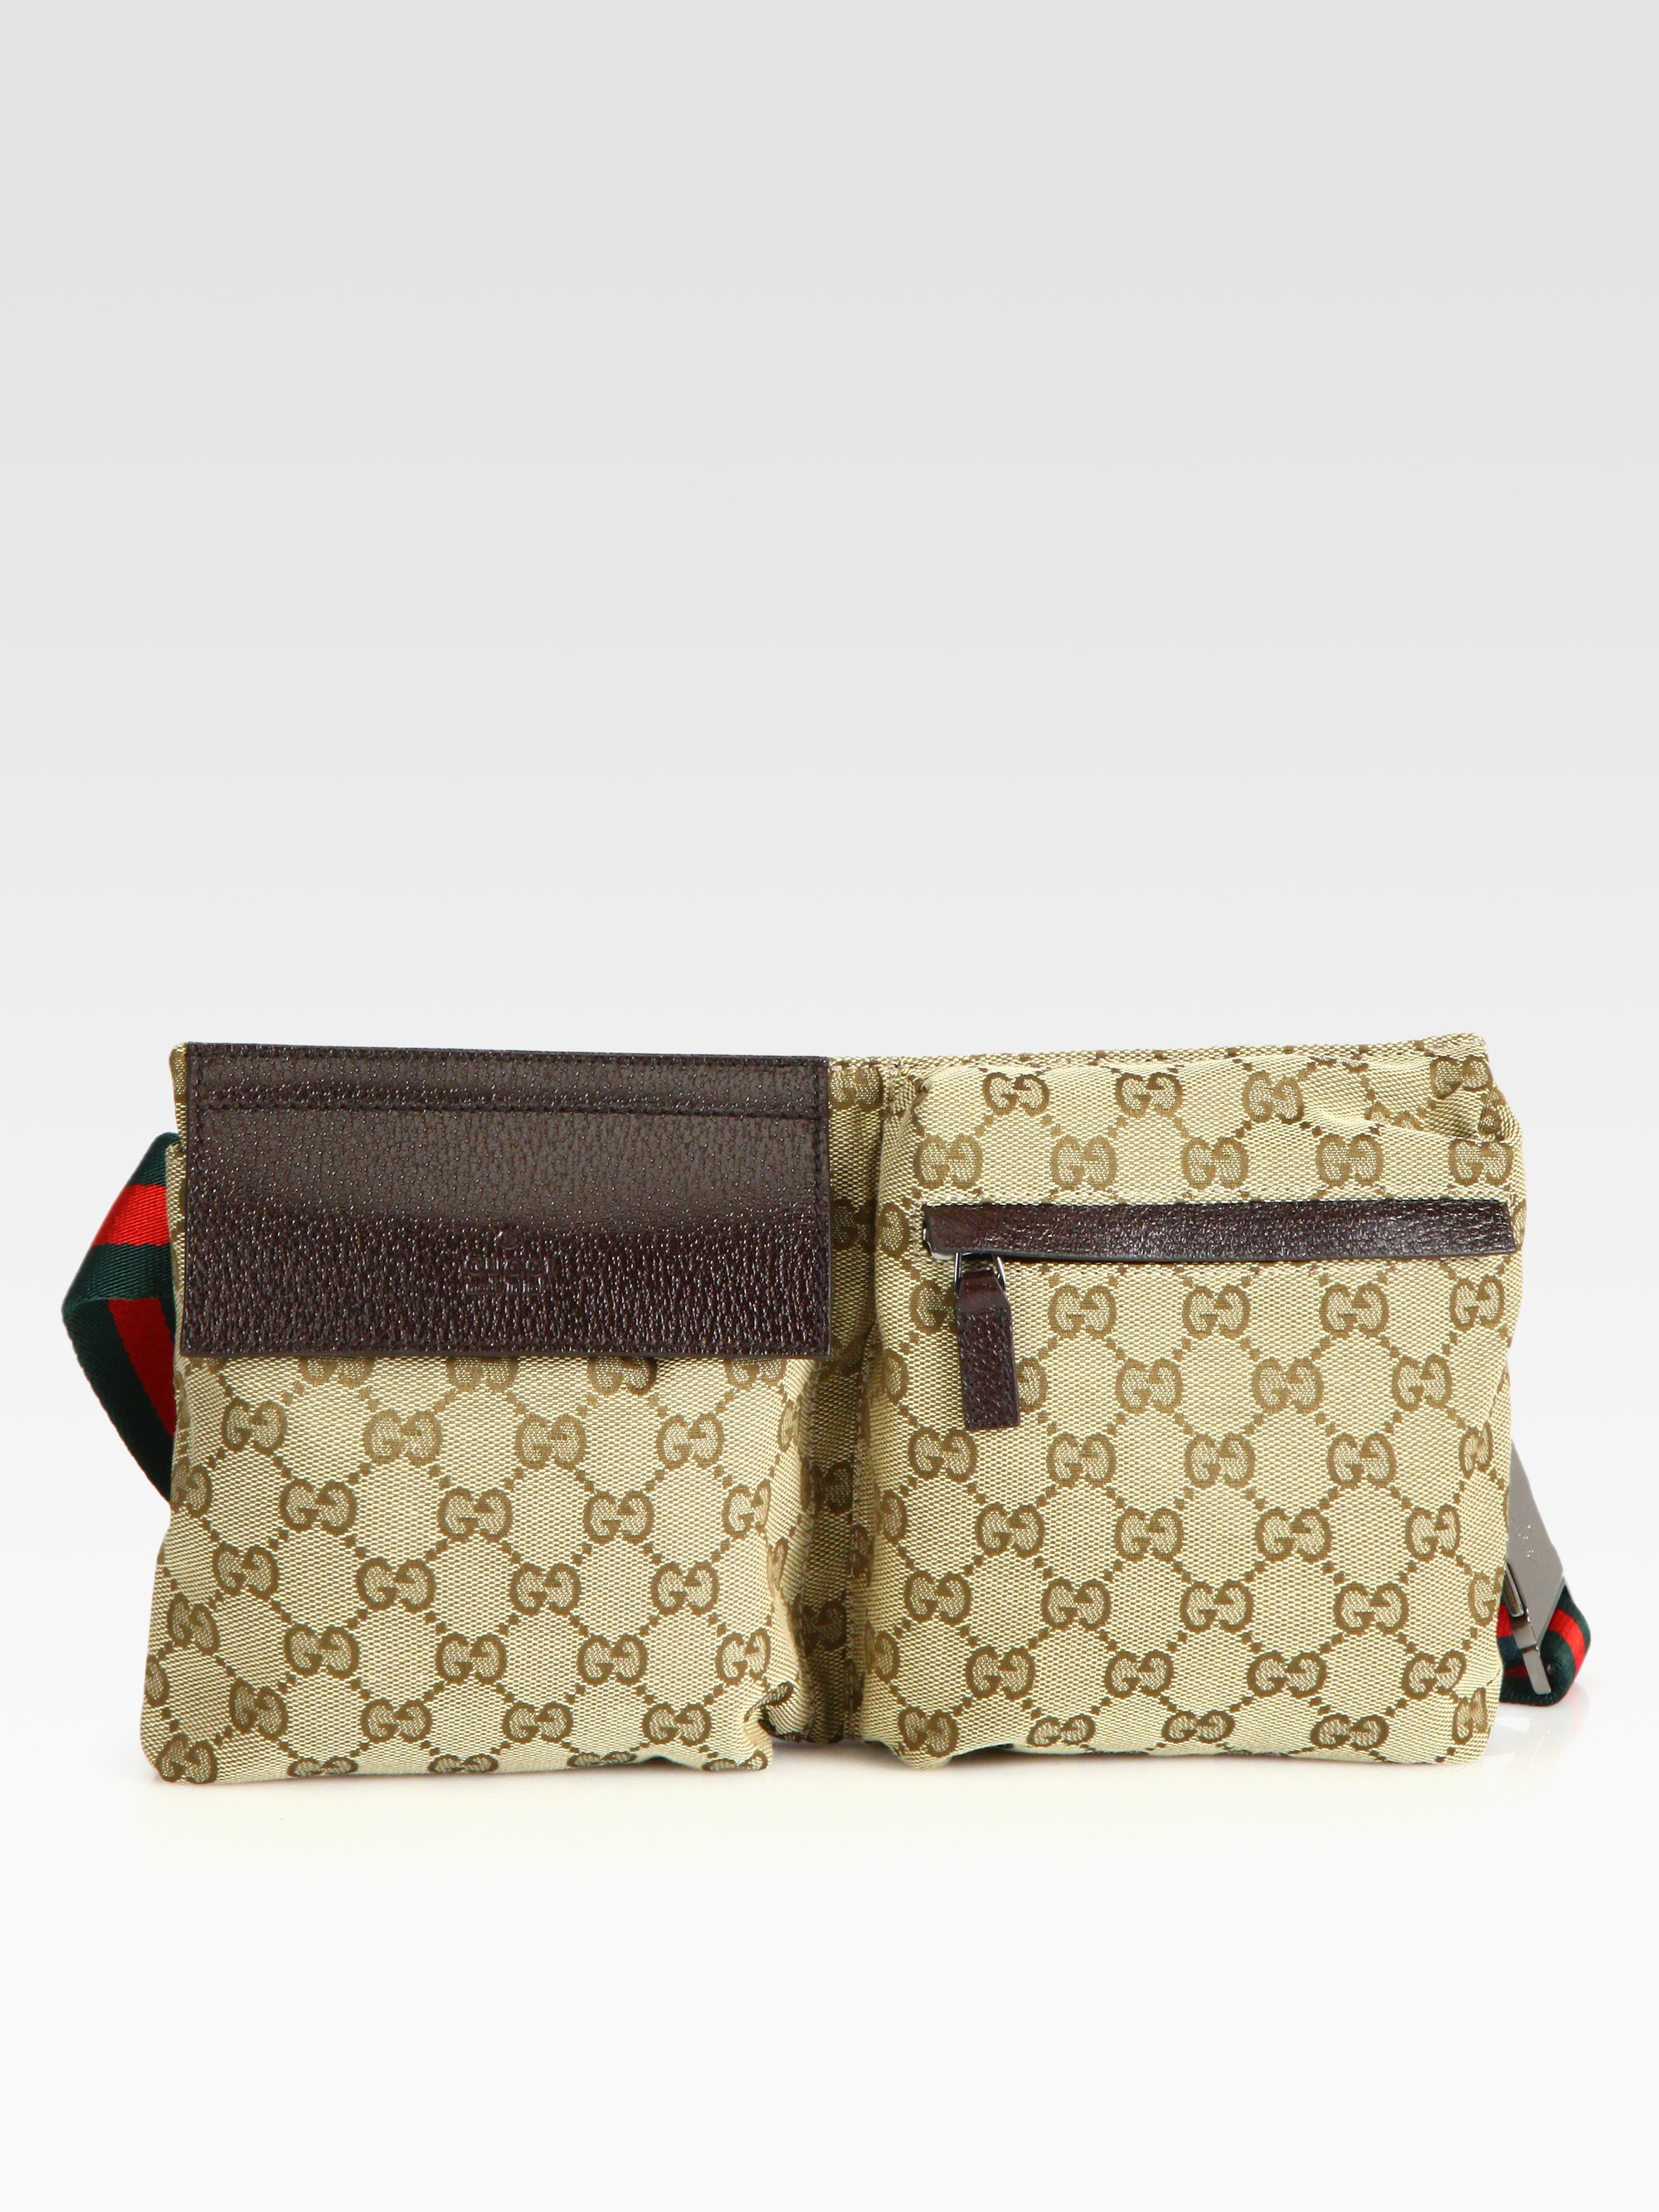 Gucci Gg Canvas Belt Bag in Beige (Natural) for Men - Lyst